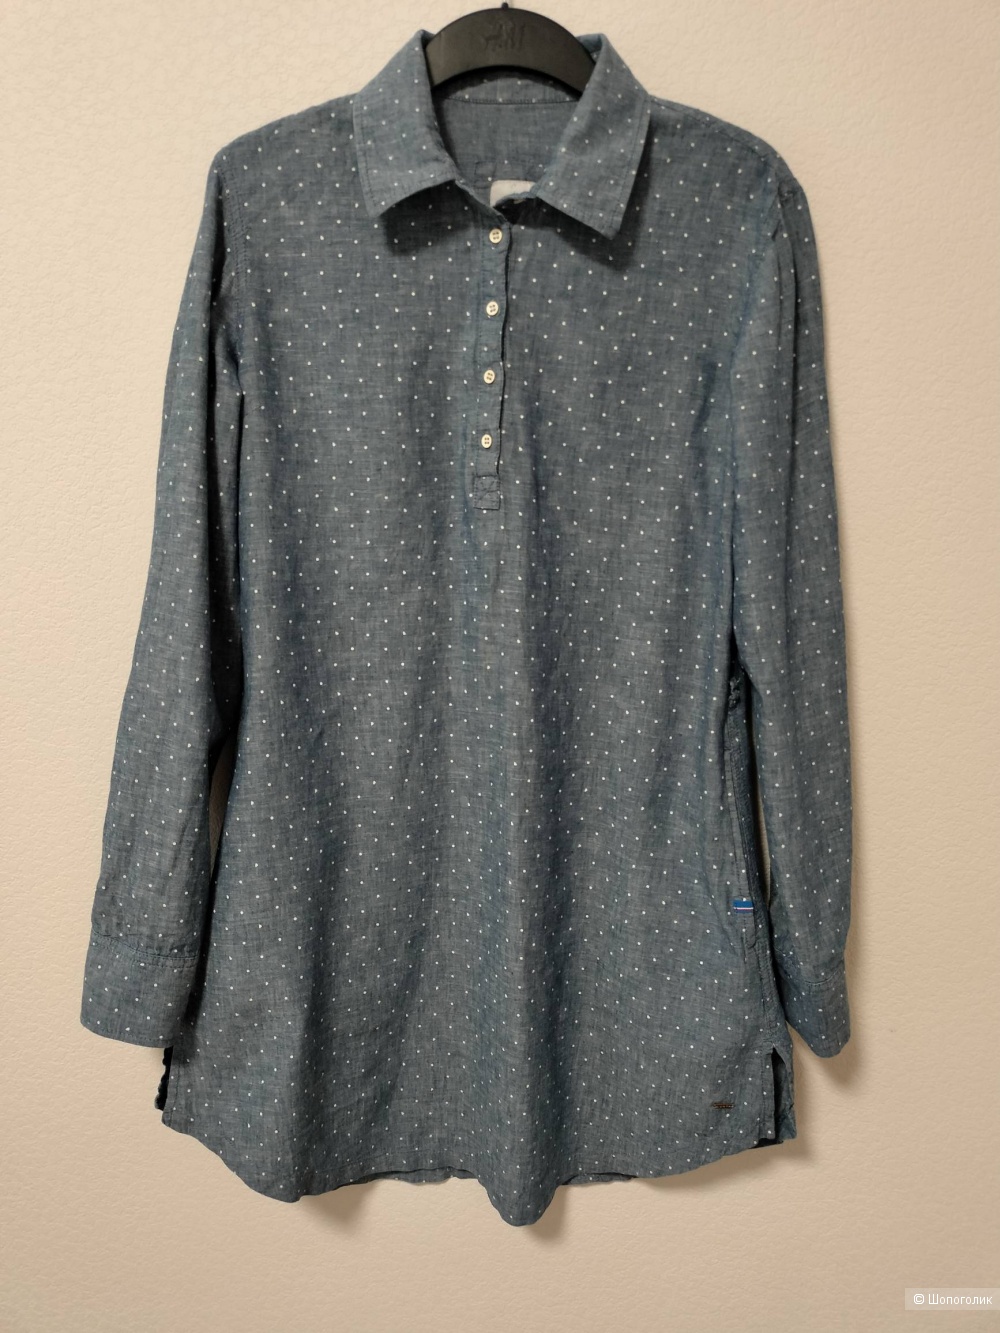 Рубашка -туника  Luhta , размер 38 EUR